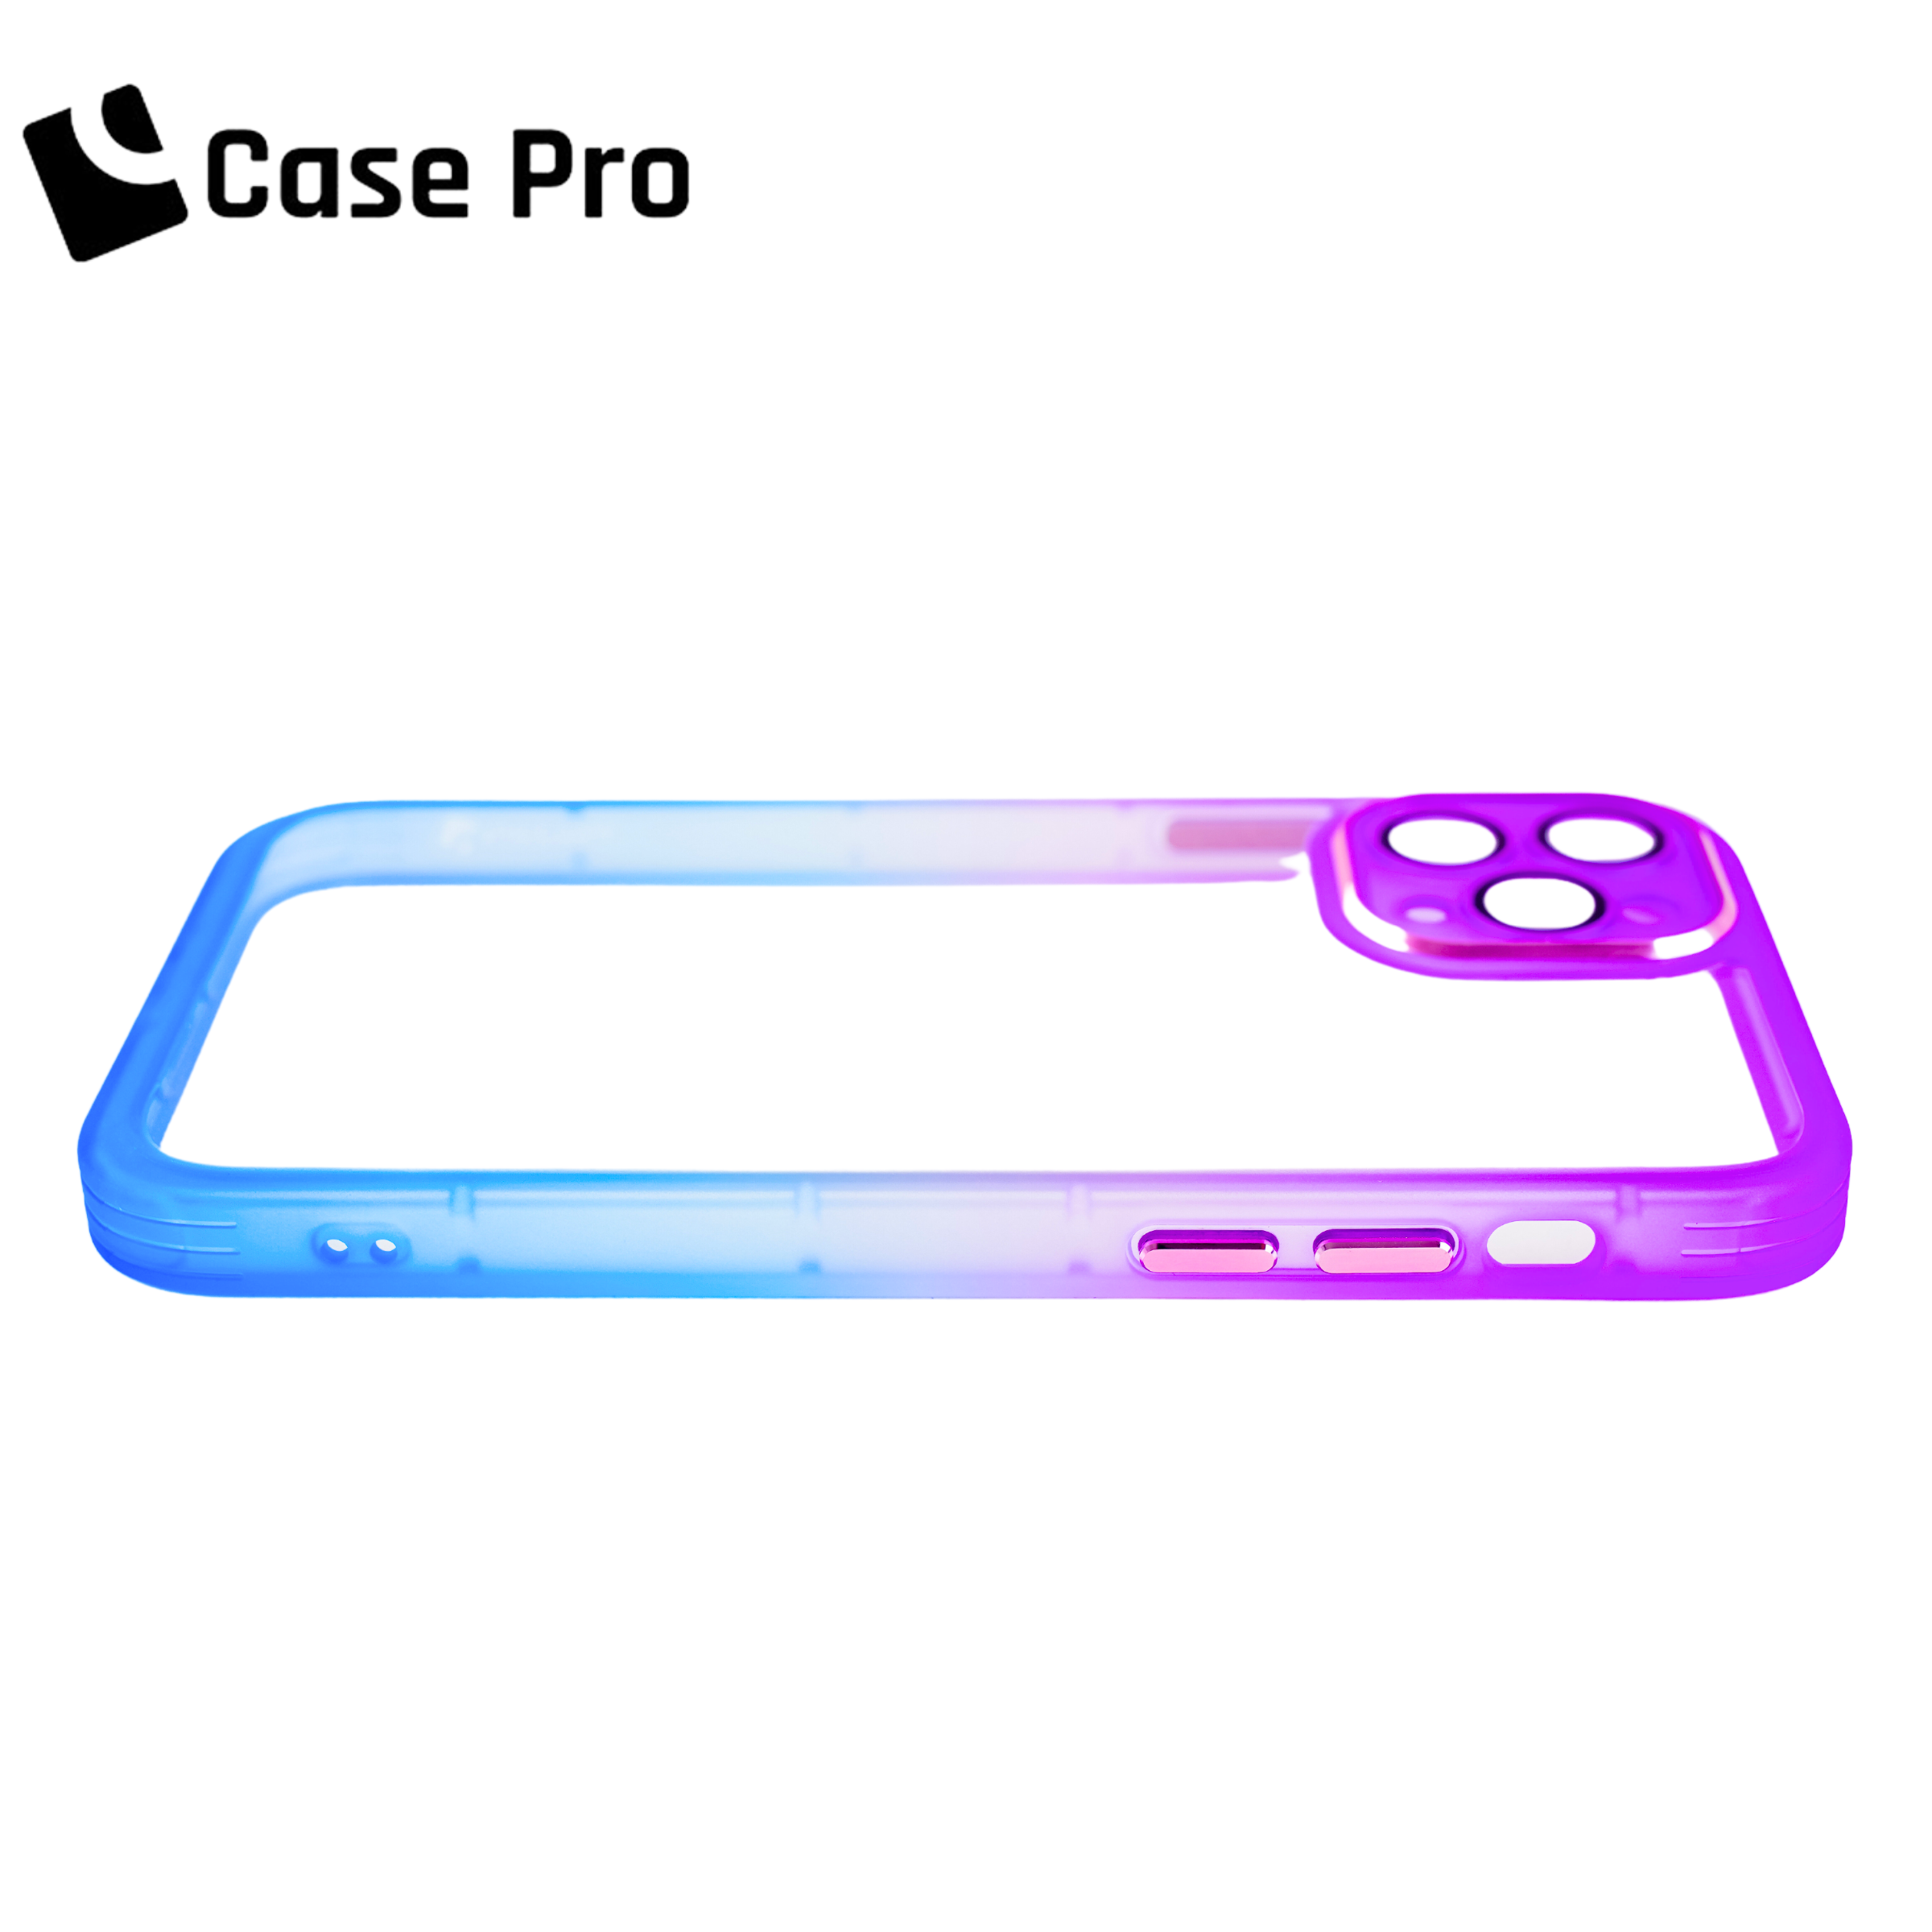 CASE PRO iPhone 11 Case (Color Gradient)